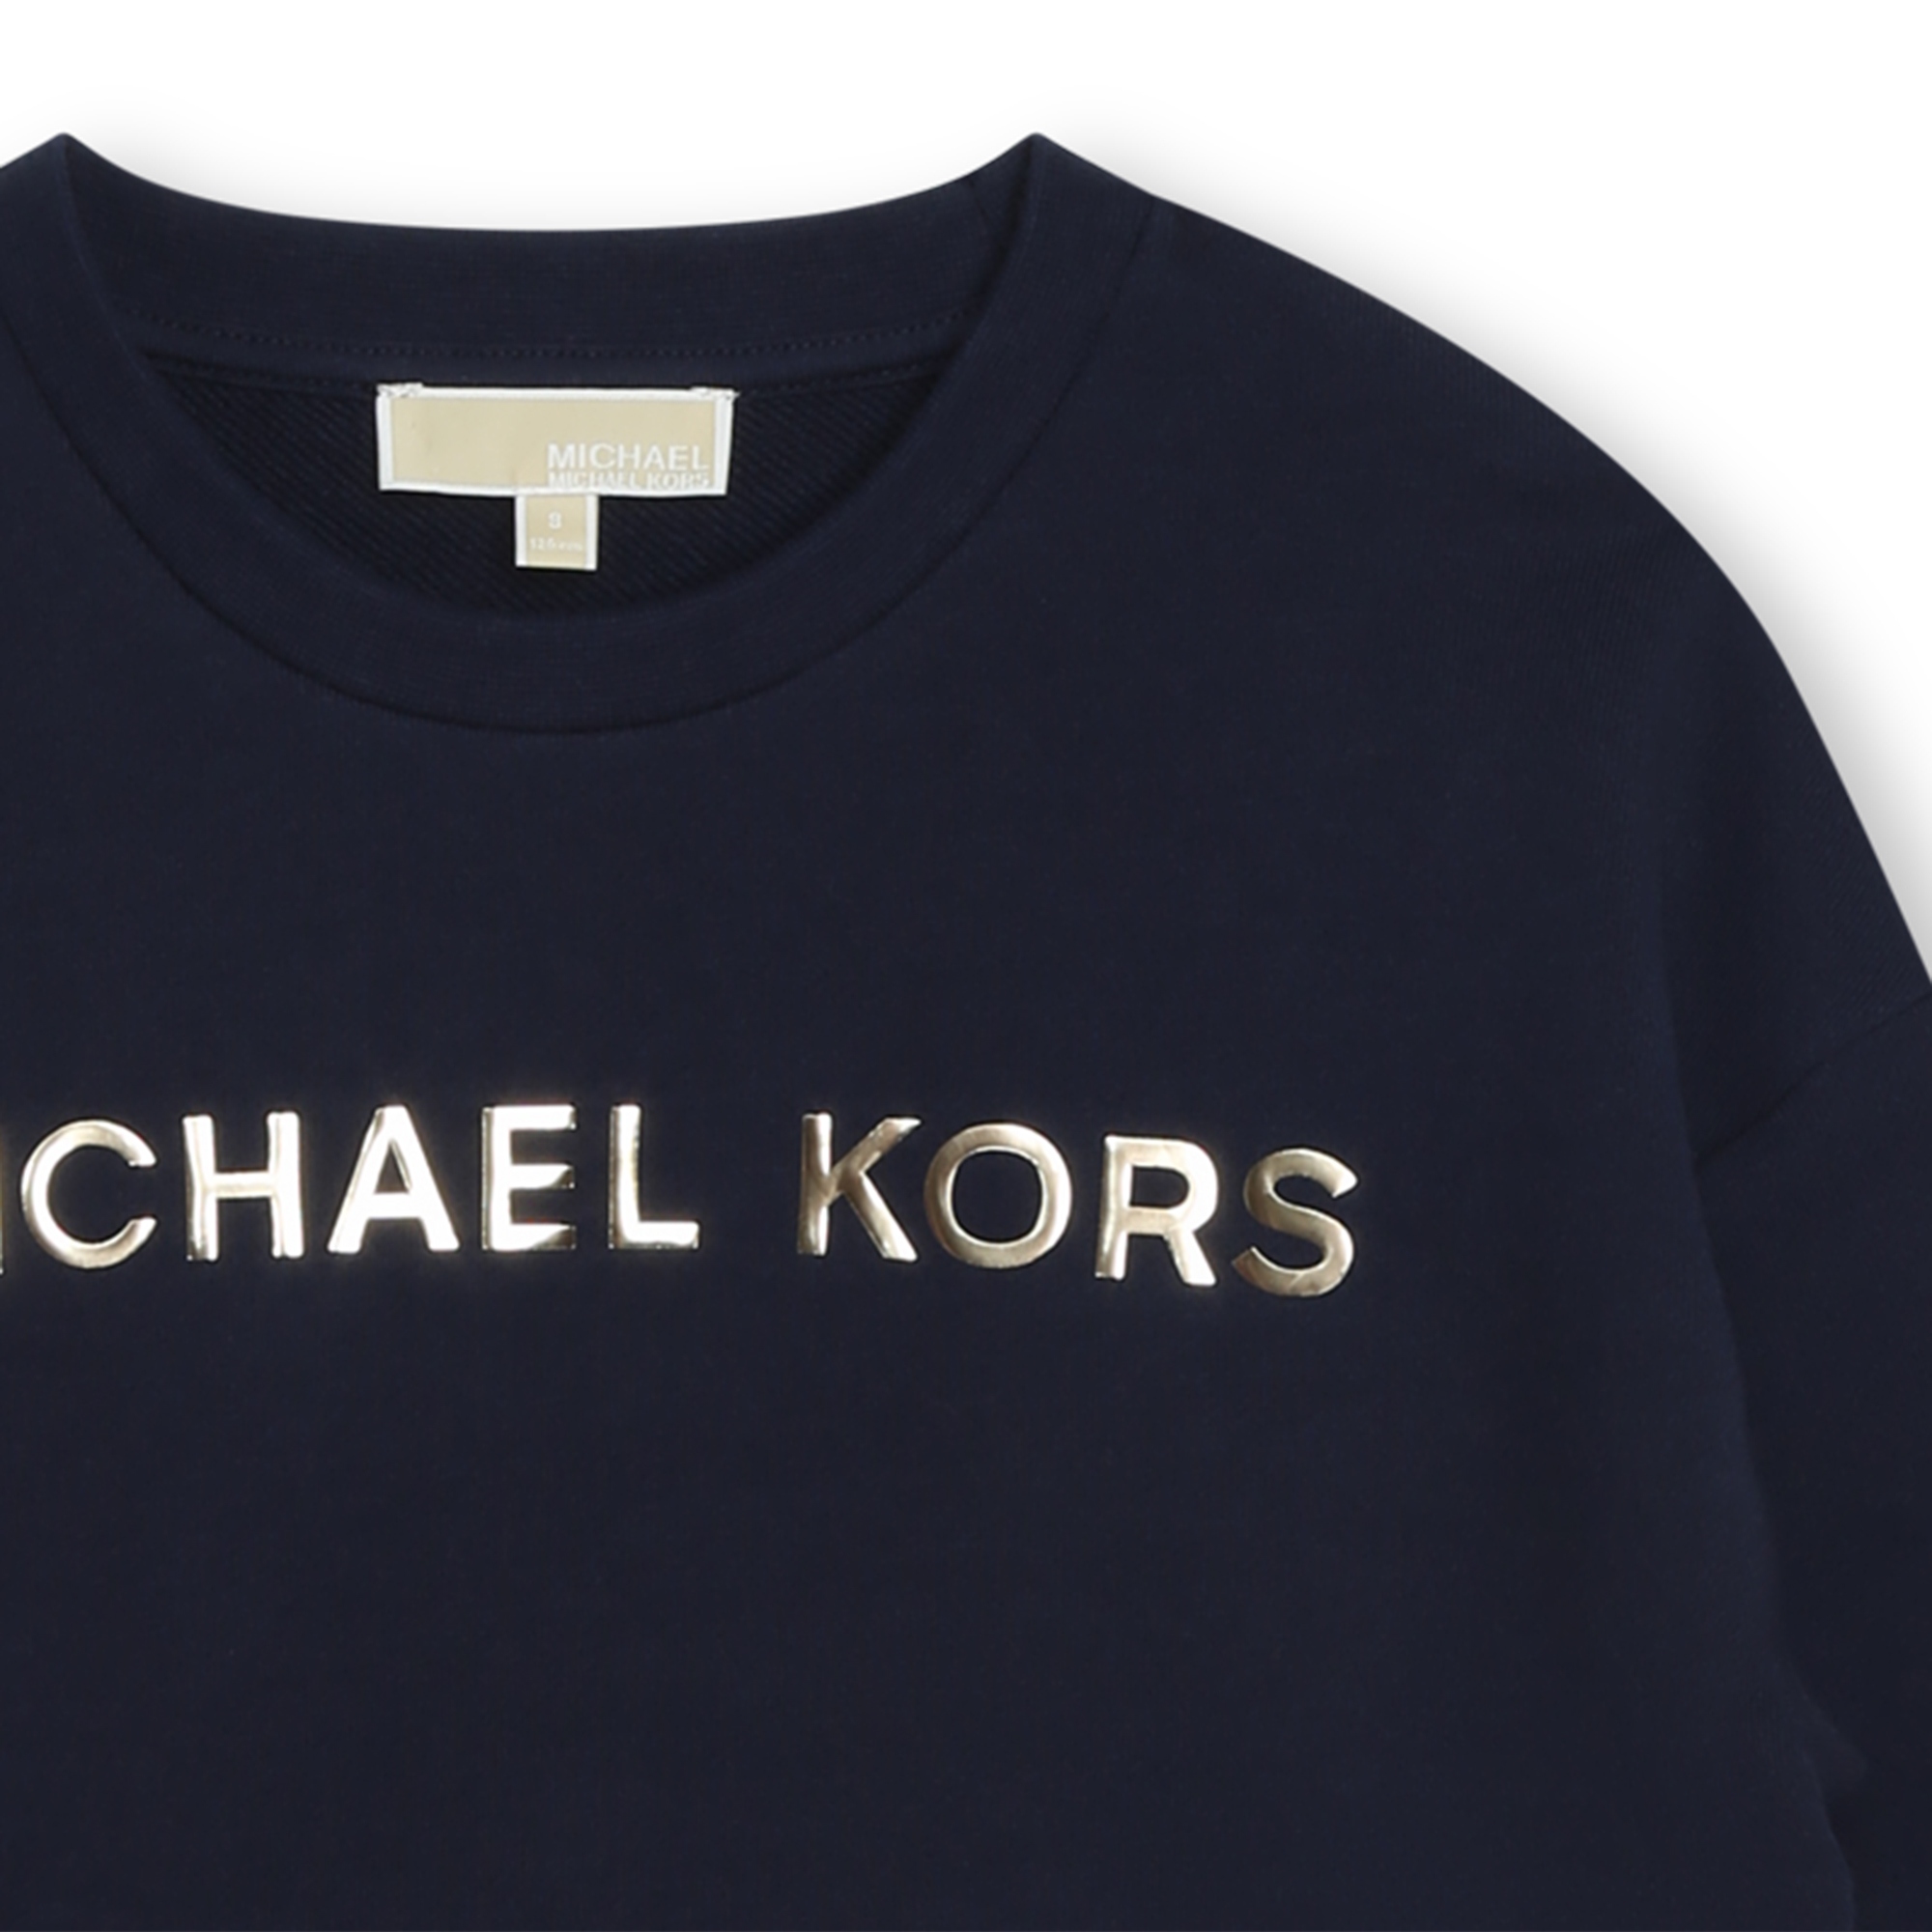 Sweat-shirt molletonné coton MICHAEL KORS pour FILLE